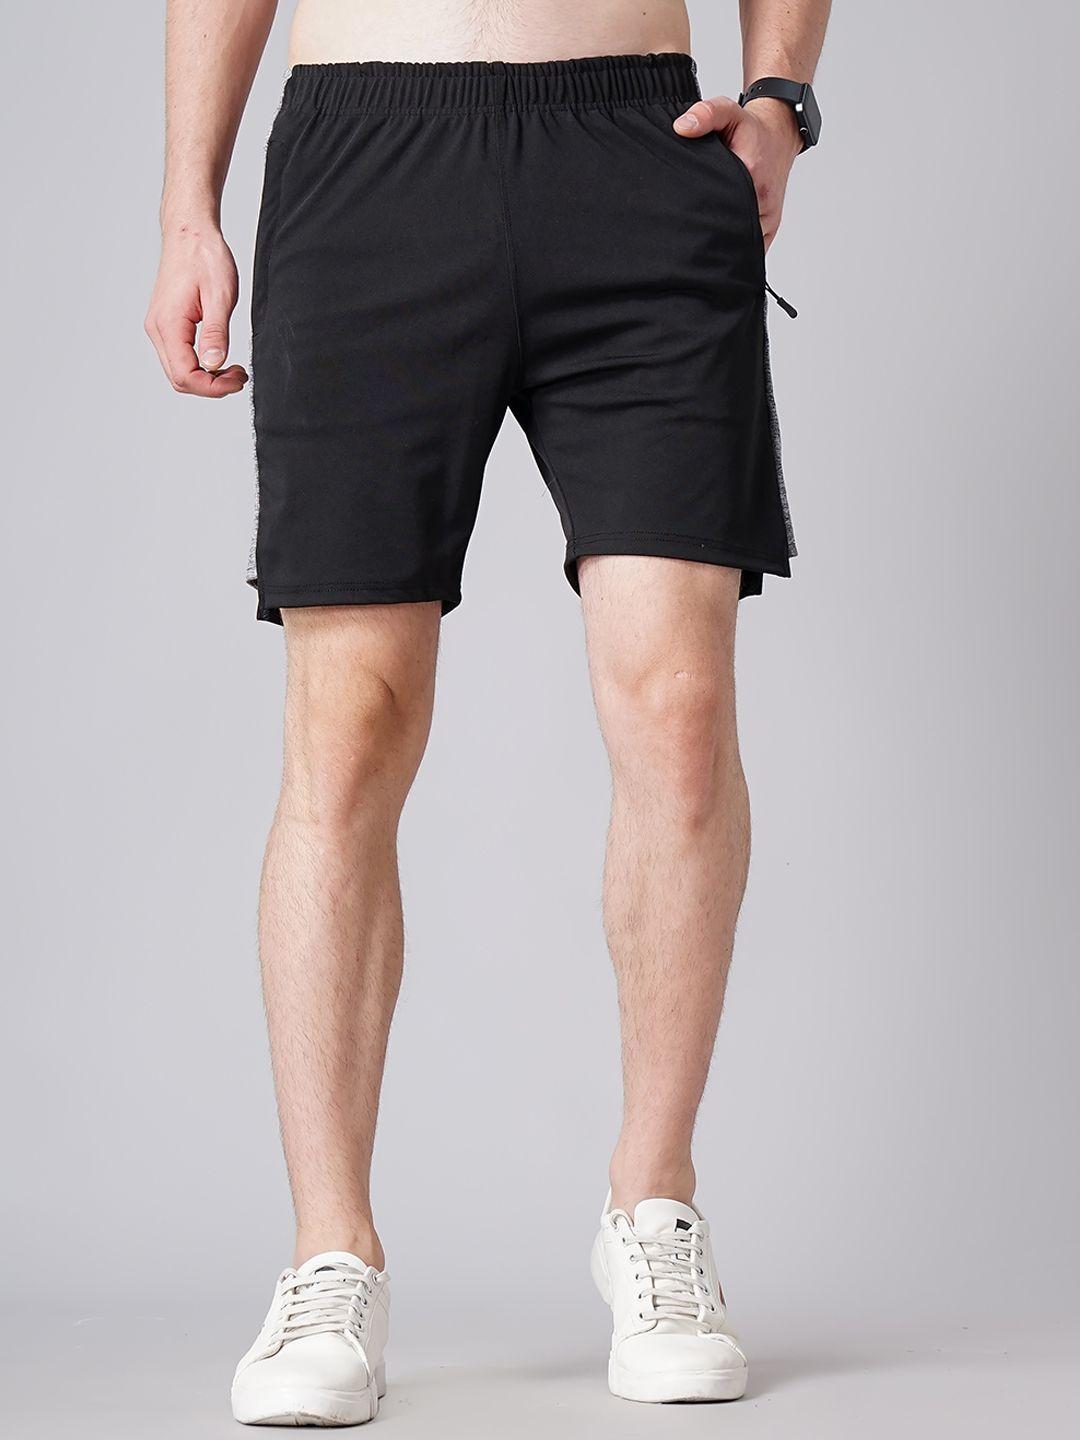 madsto plus size men cotton slim fit shorts